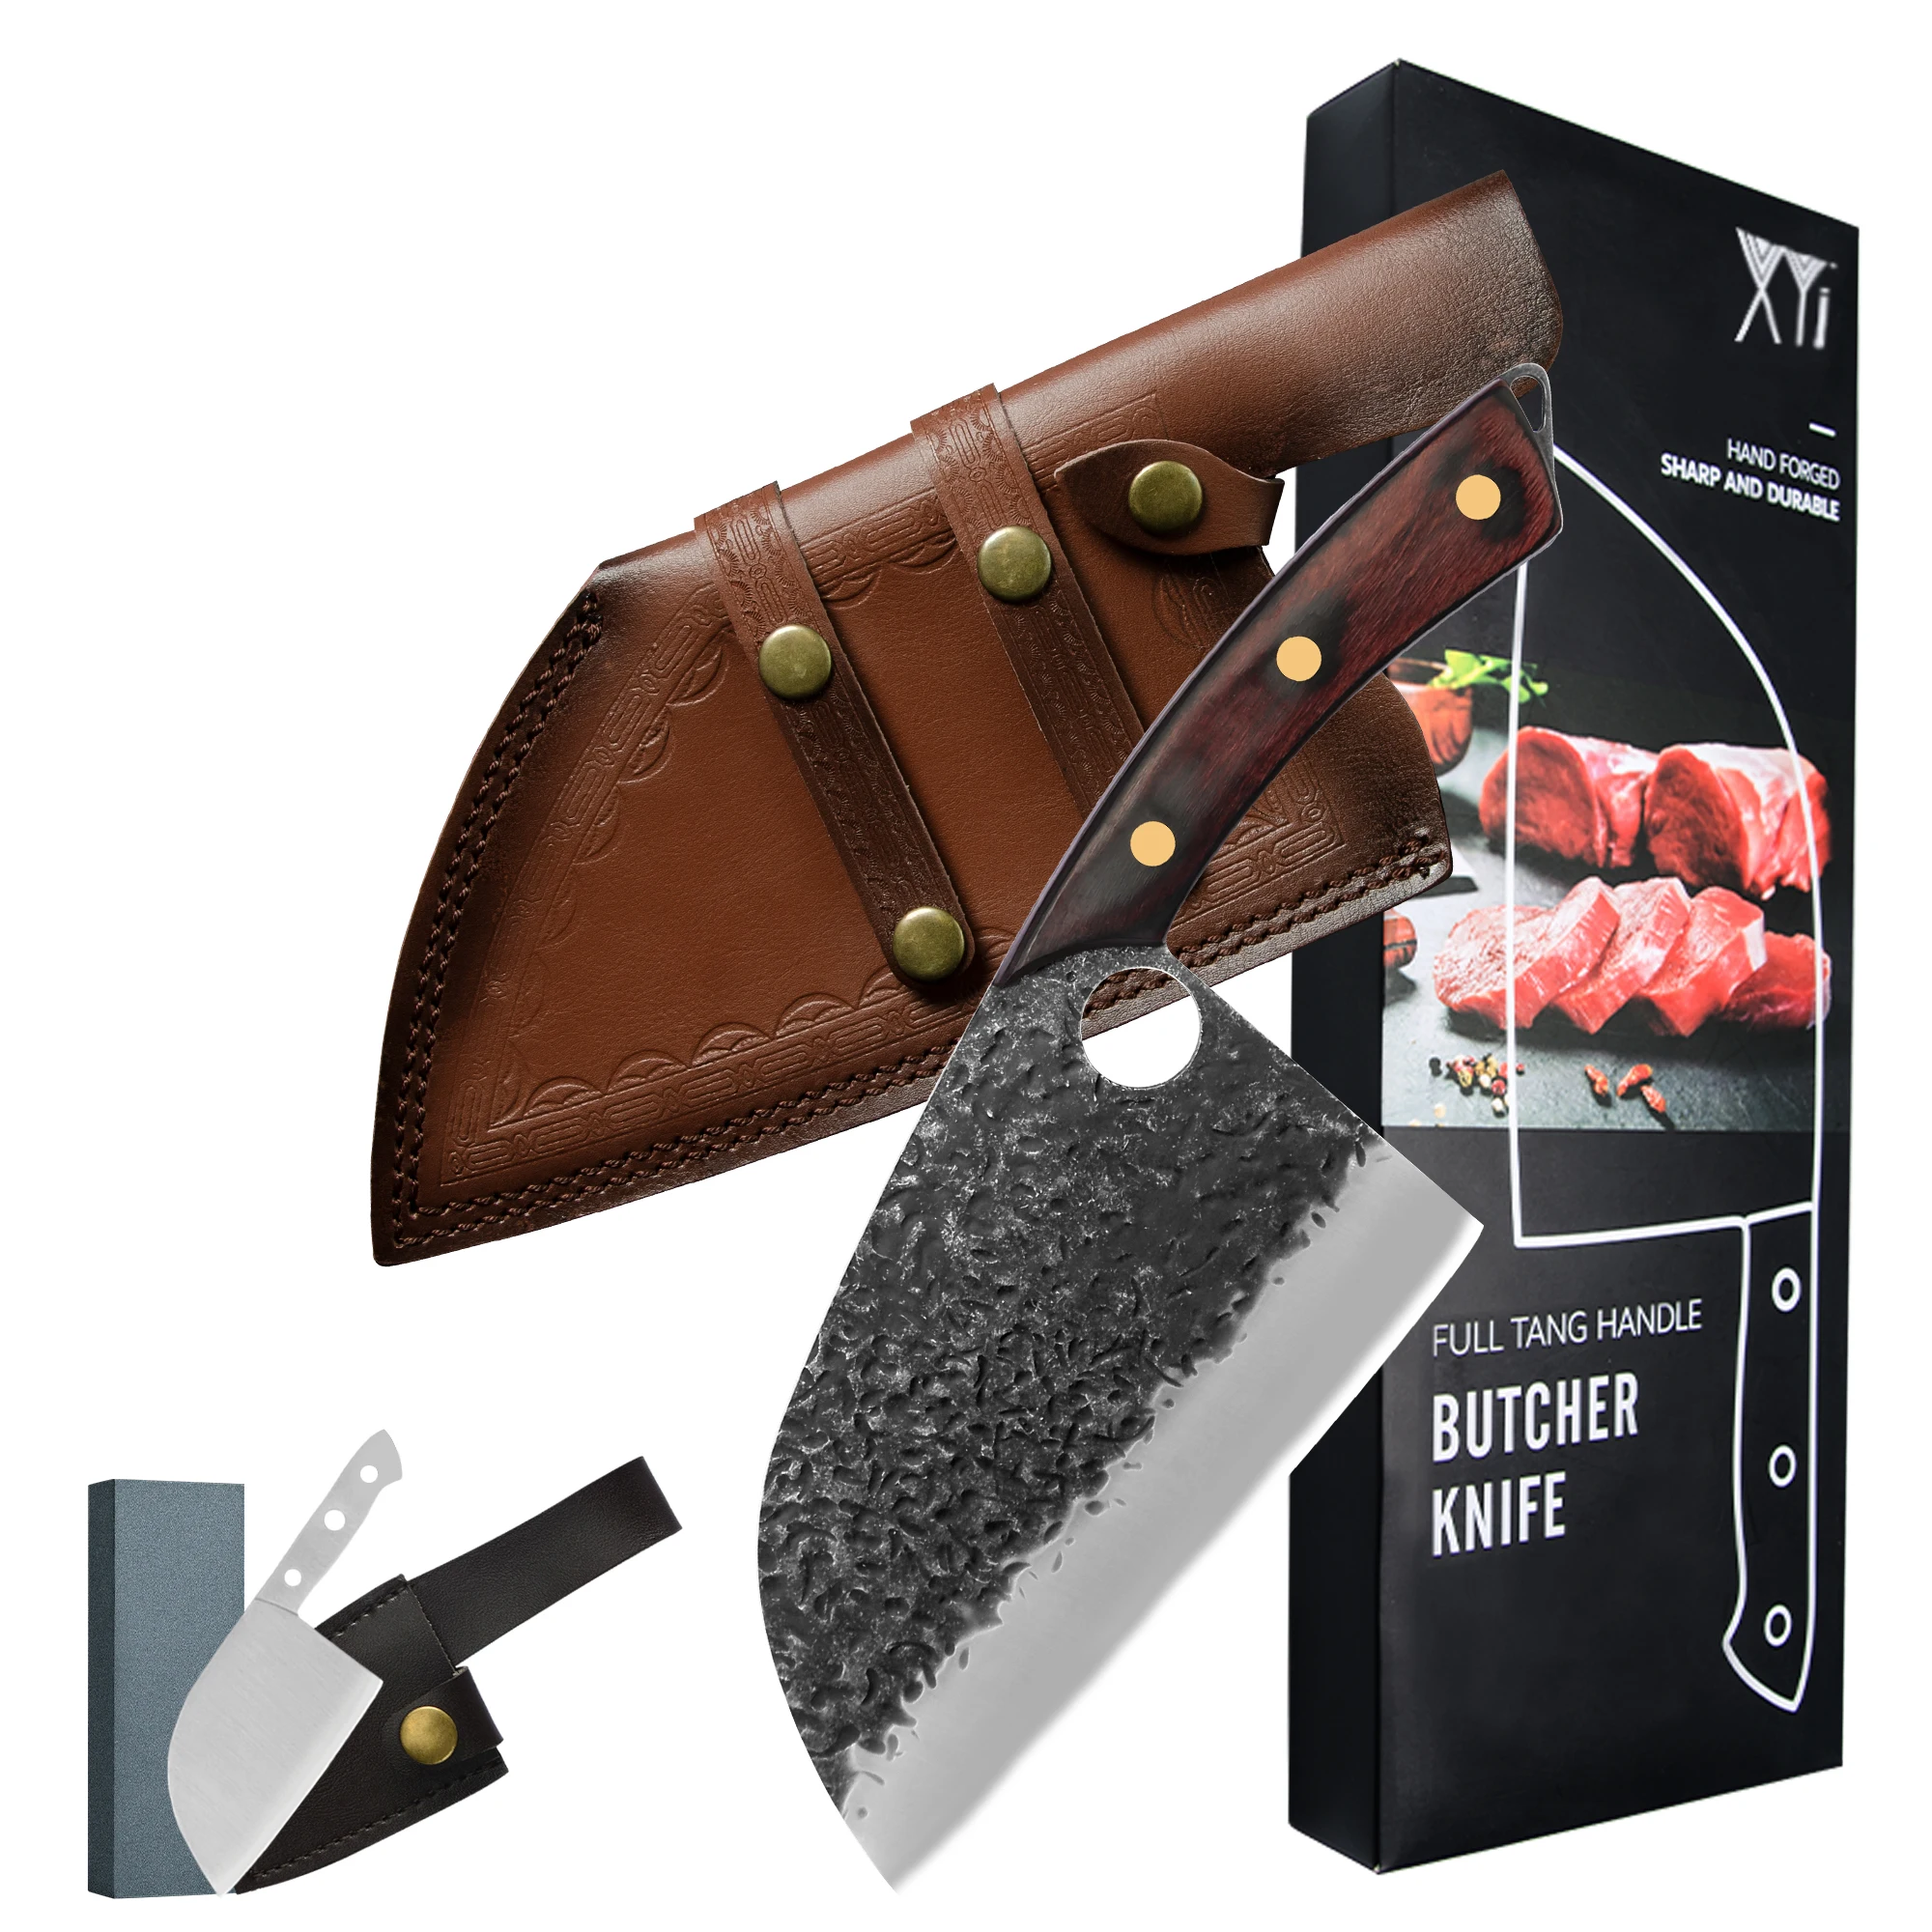 

Xyj 7-дюймовый Нож для нарезки мяса мясницкий нож из высокоуглеродистой стали набор ножей мясника полный поварской слайсер с деревянной ручк...